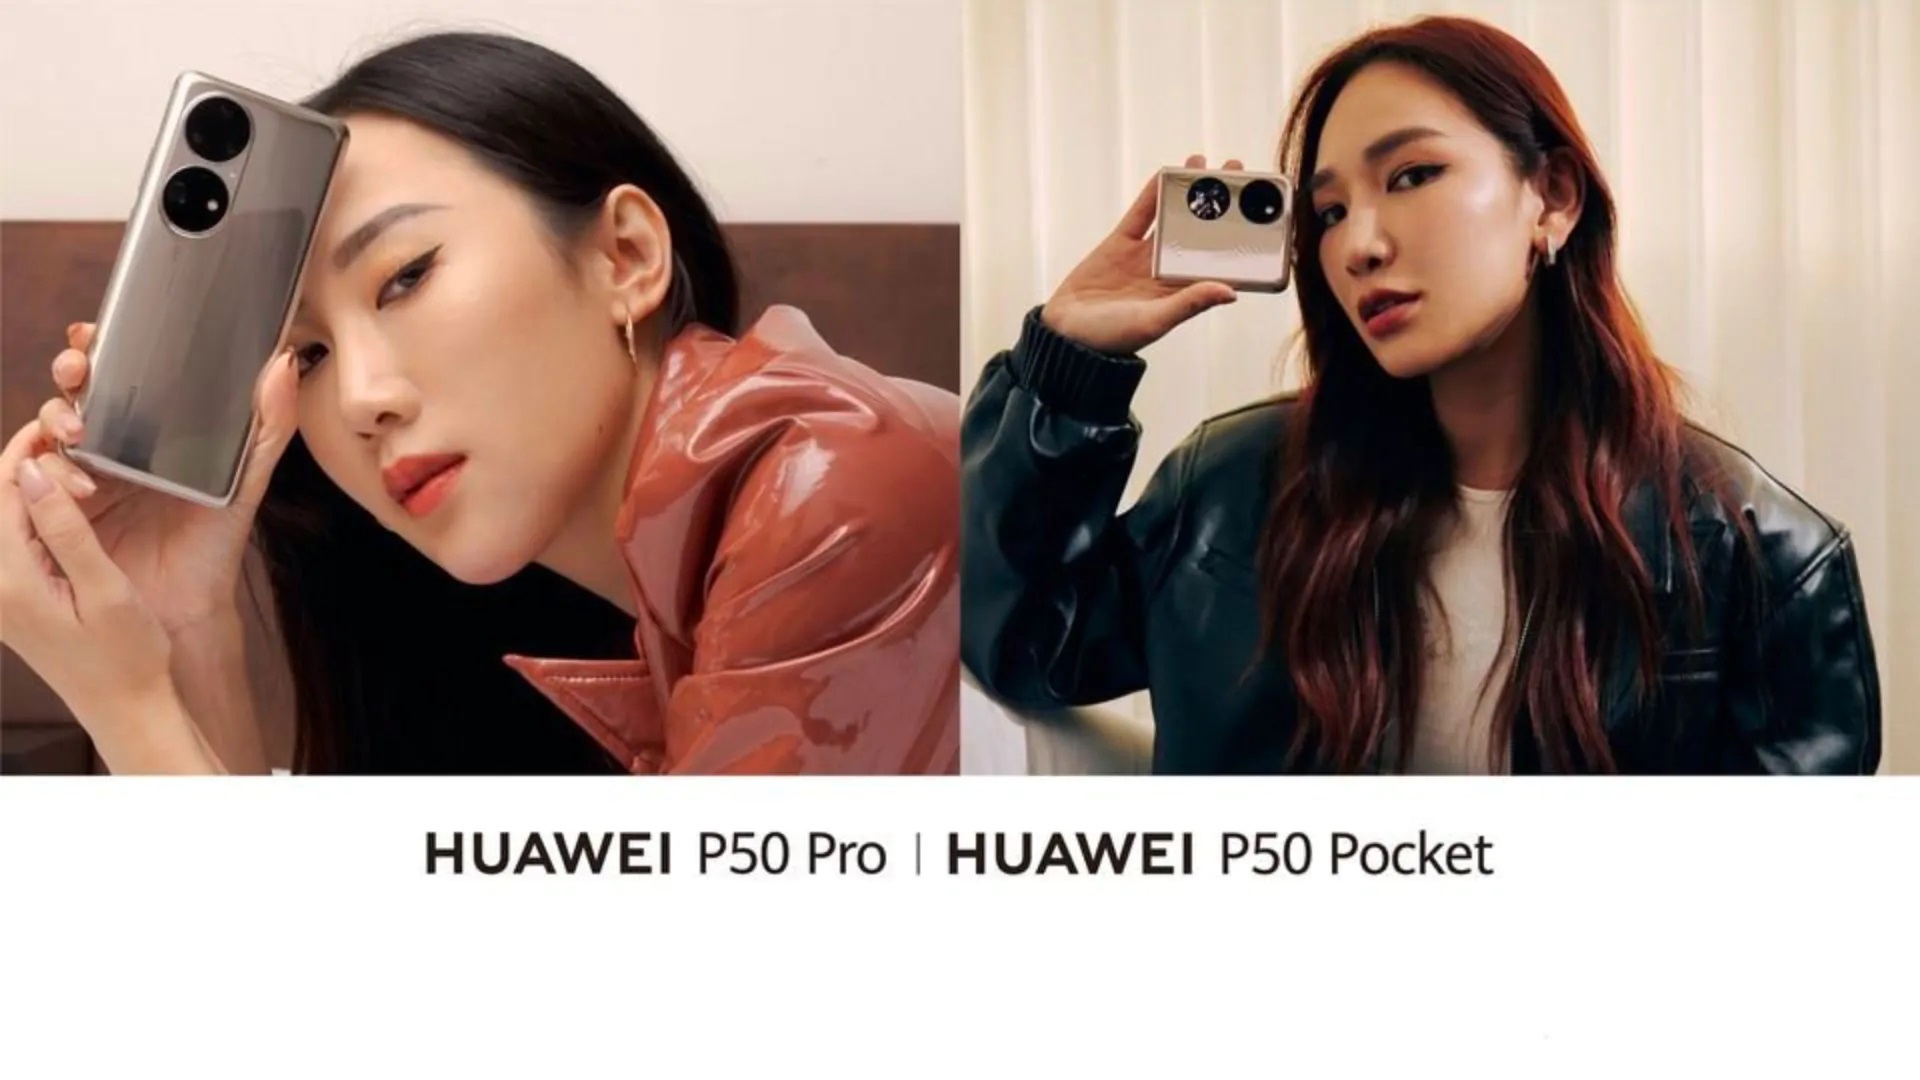 Esperado: Huawei presentará el buque insignia P50 Pro y el P50 Pocket plegable en el mercado global el 12 de enero